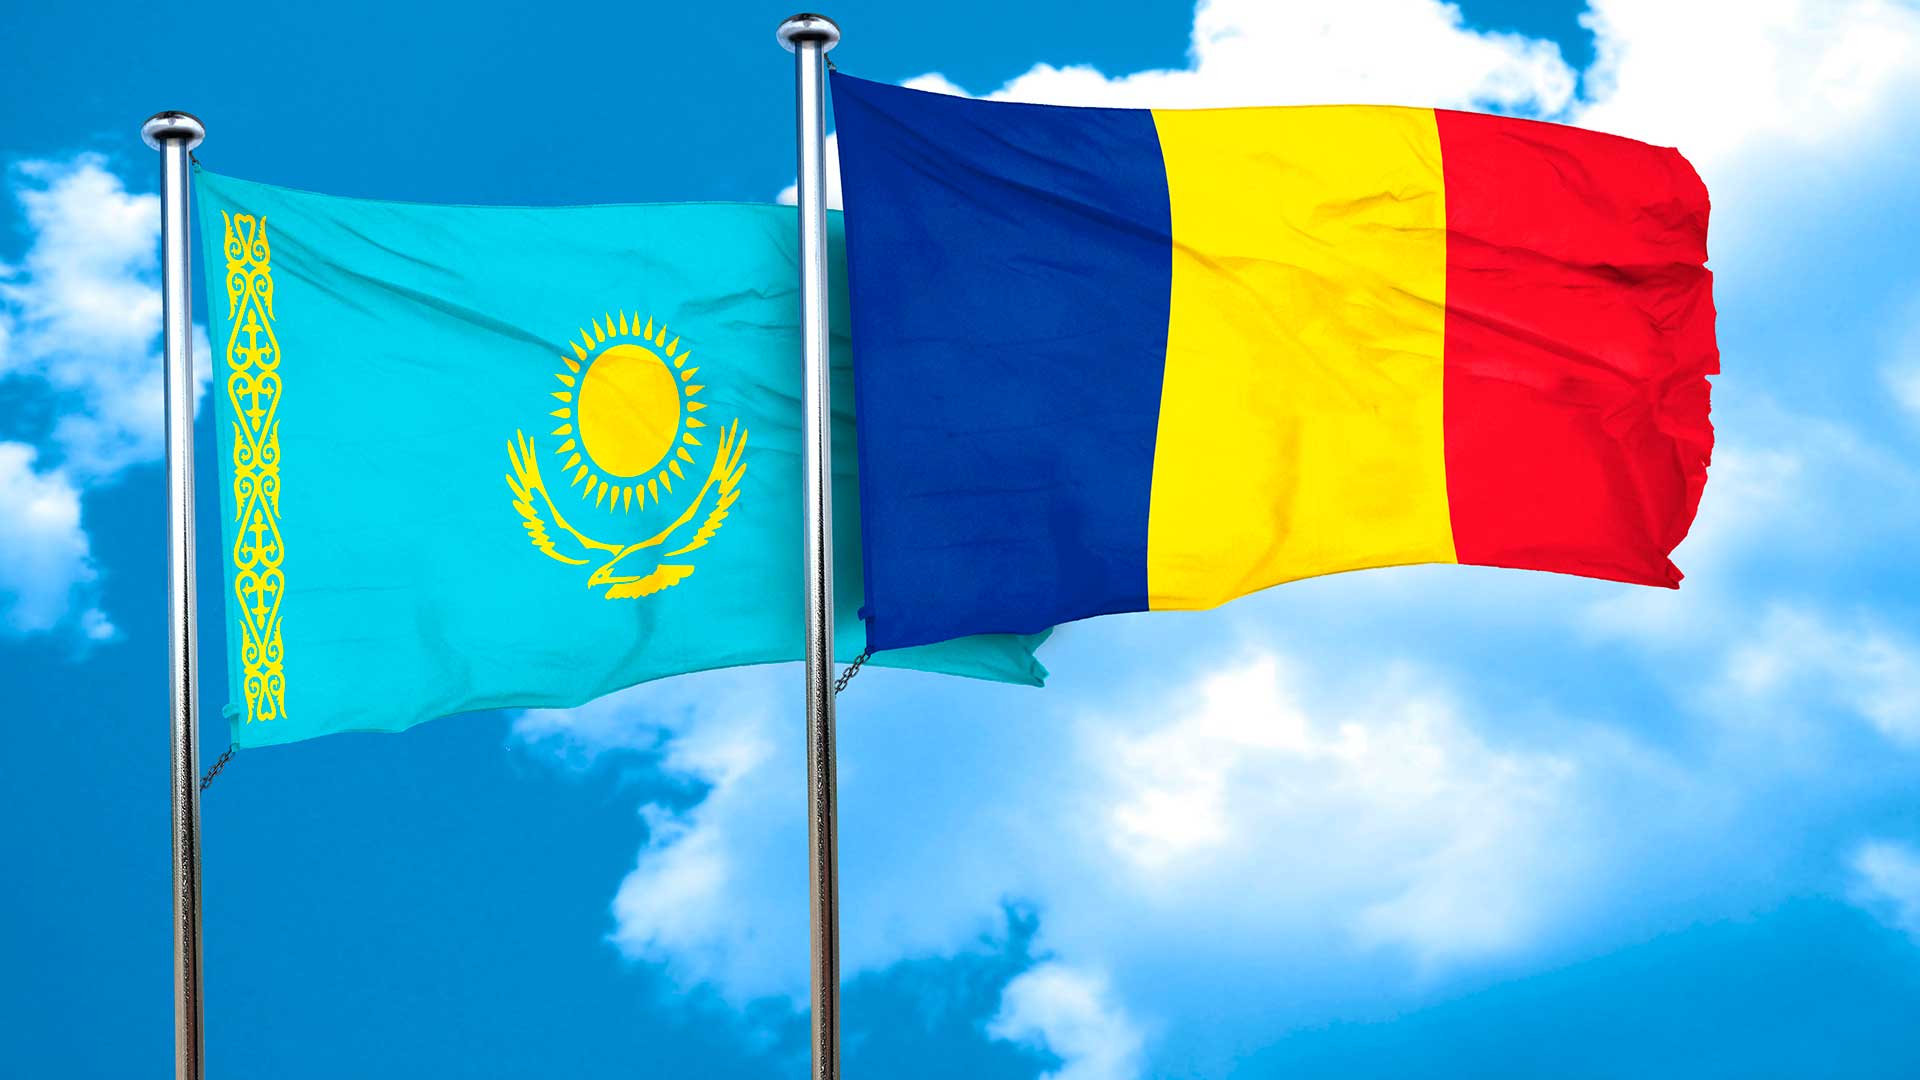 Флаги Румынии и Казахстана, граждане которого могут получить паспорт ЕС